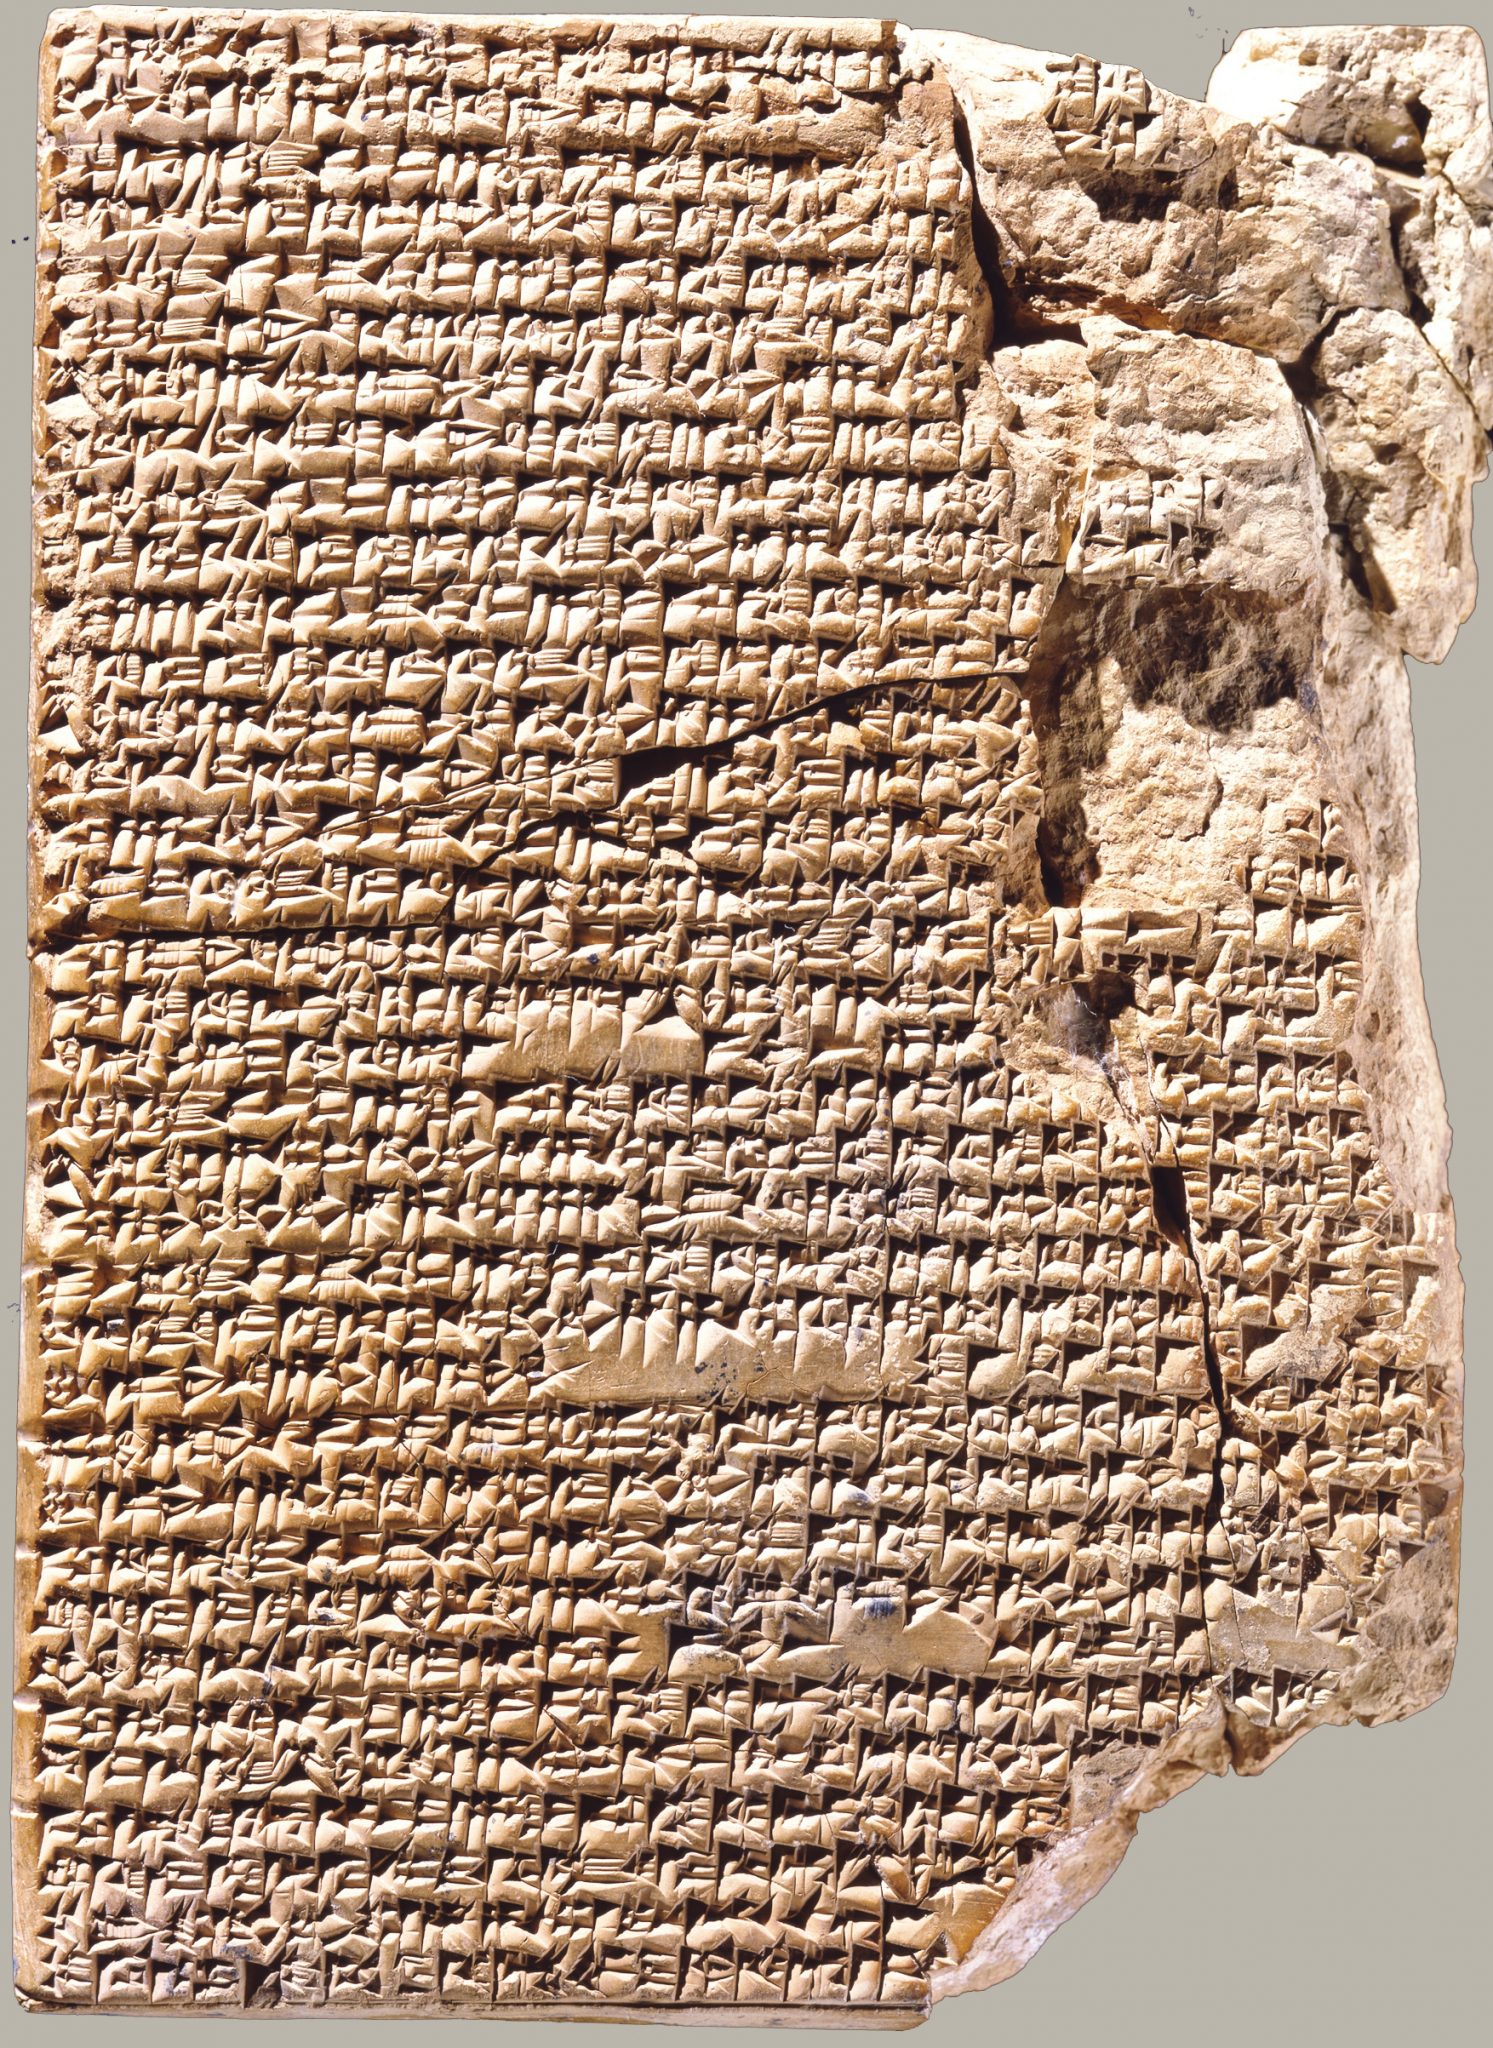 Babylonianstewrecipes.jpg (1493×2048)